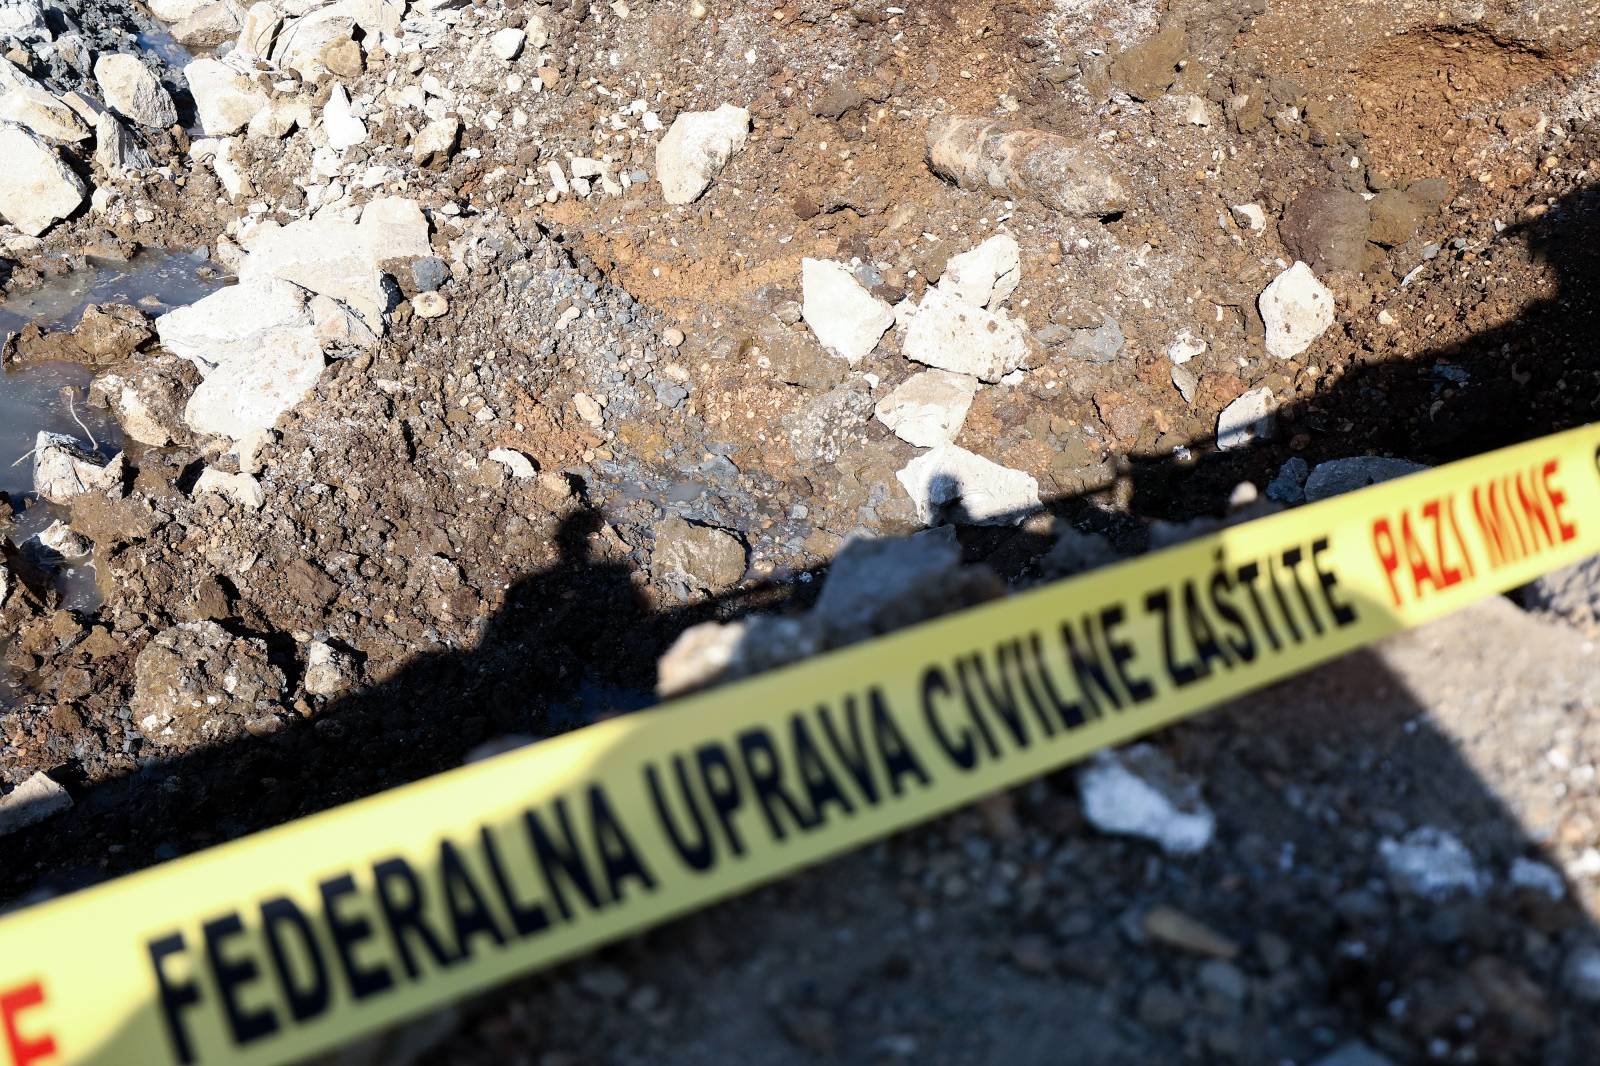 JoÅ¡ jedna avio-bomba pronaÄena u Sarajevu